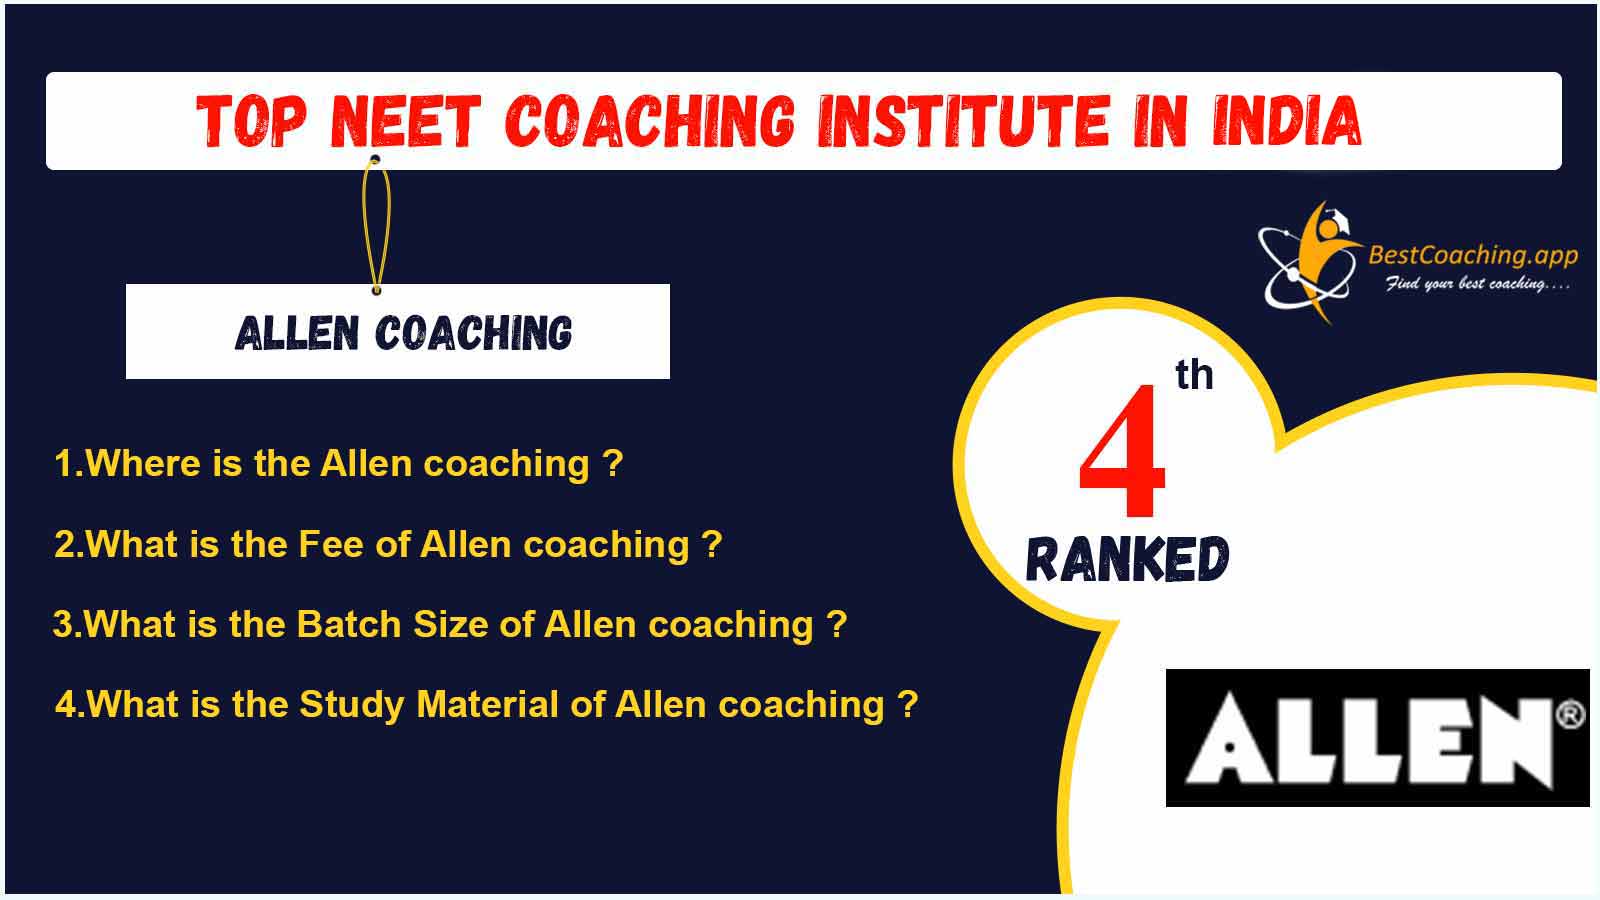 NEET Coaching Institute in India